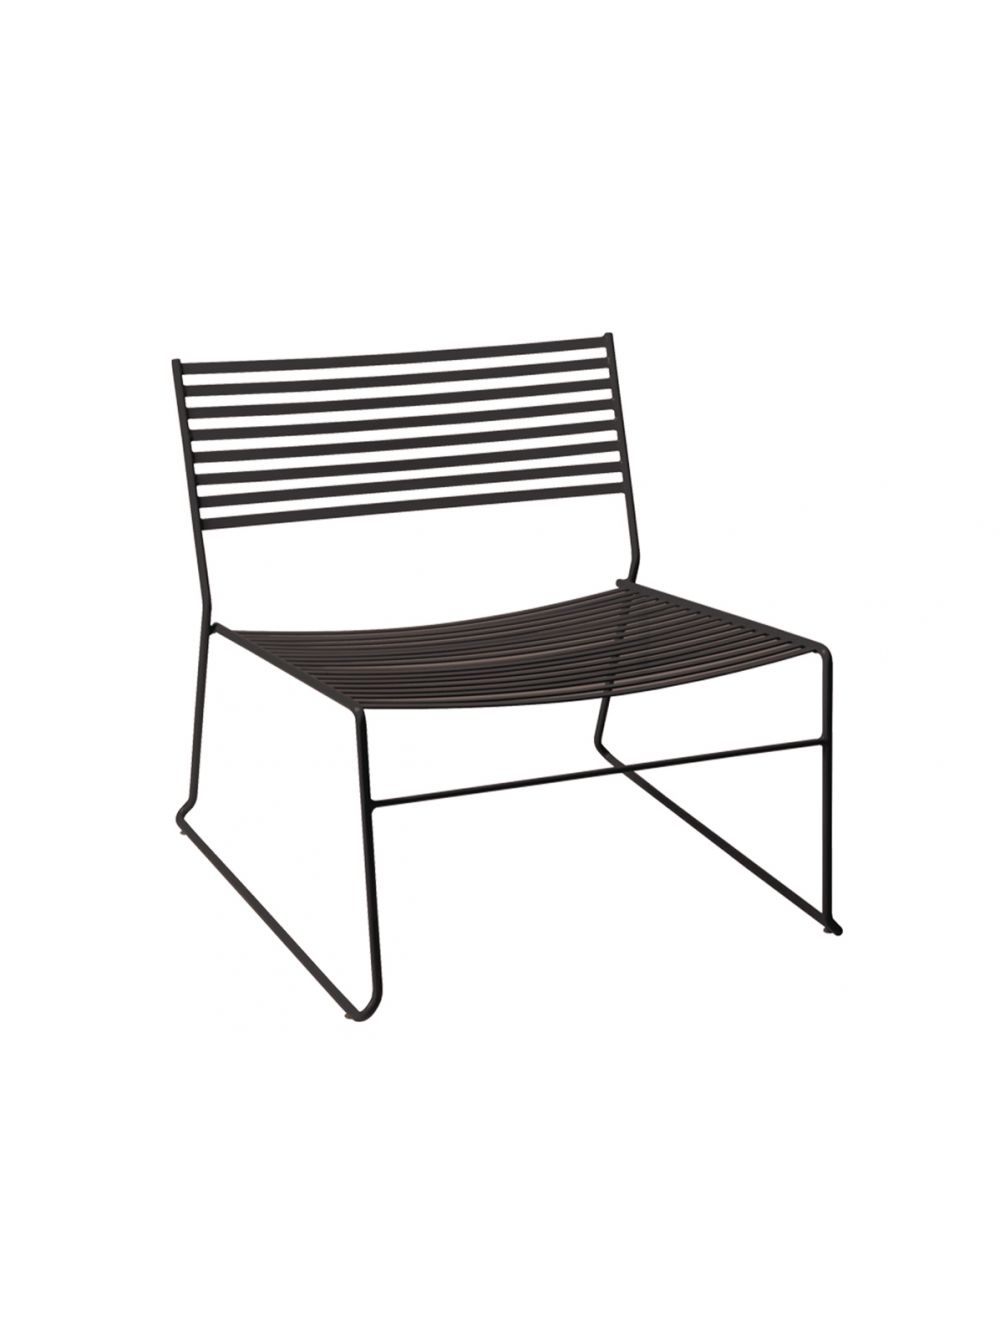 Aero 023 Lounge Garden Chair | Sedie.Design®